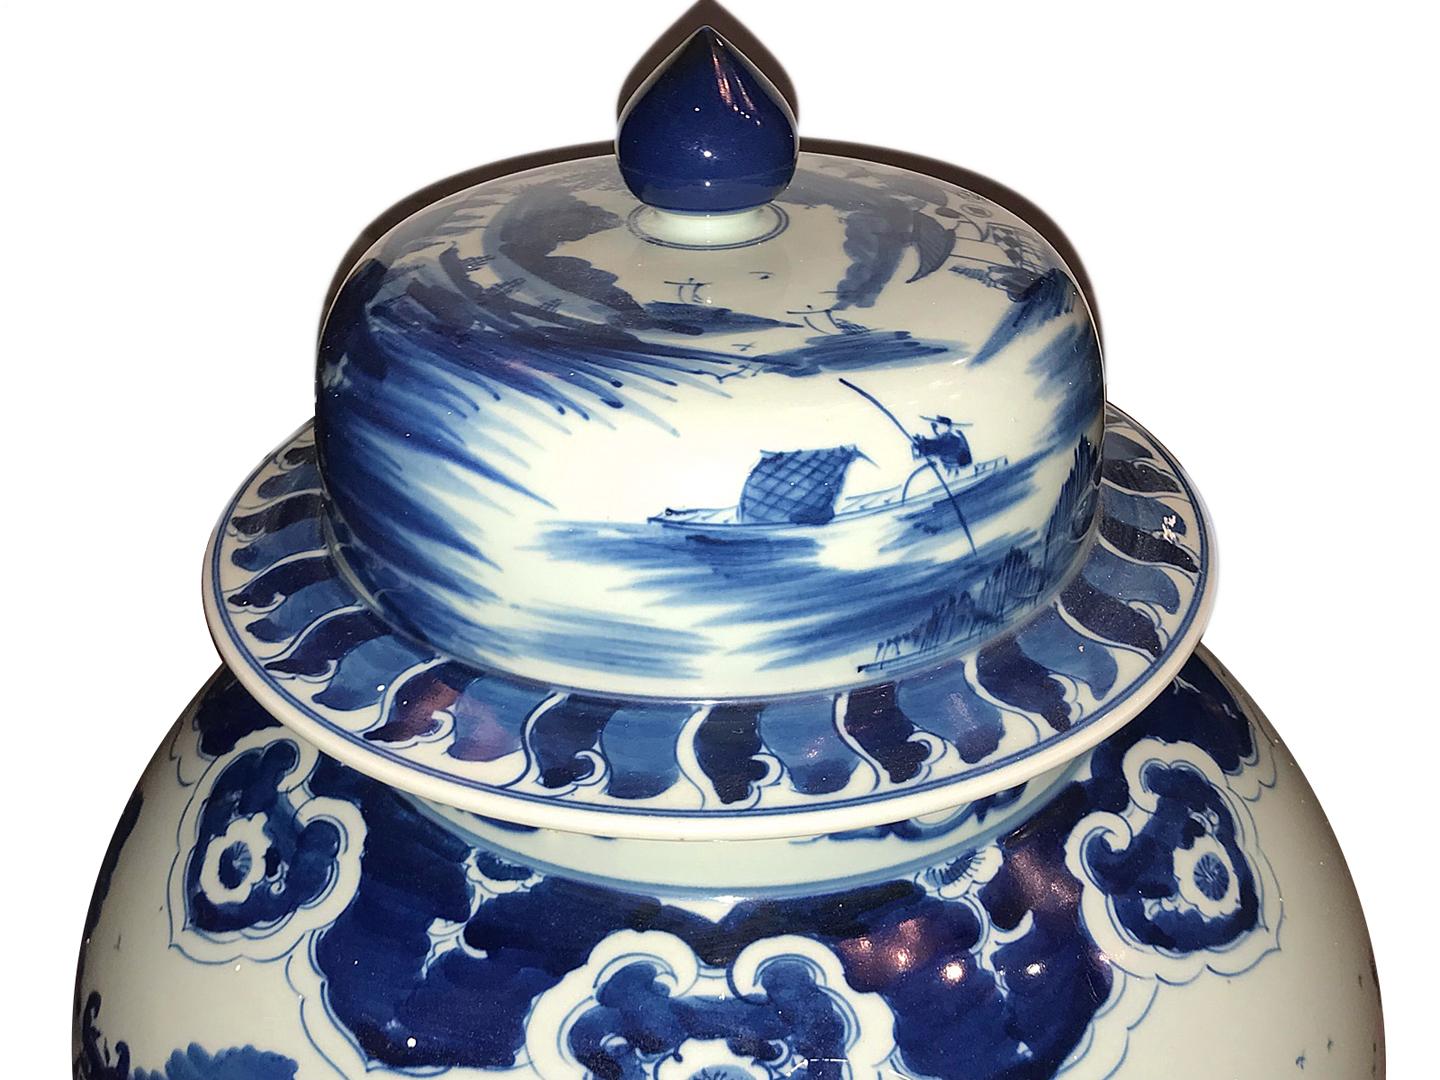 Paire de grandes jarres en porcelaine bleue et blanche, datant des années 1950, avec couvercles présentant des scènes champêtres. 

Mesures :
Hauteur 21.25 ?
Diamètre 13 ?